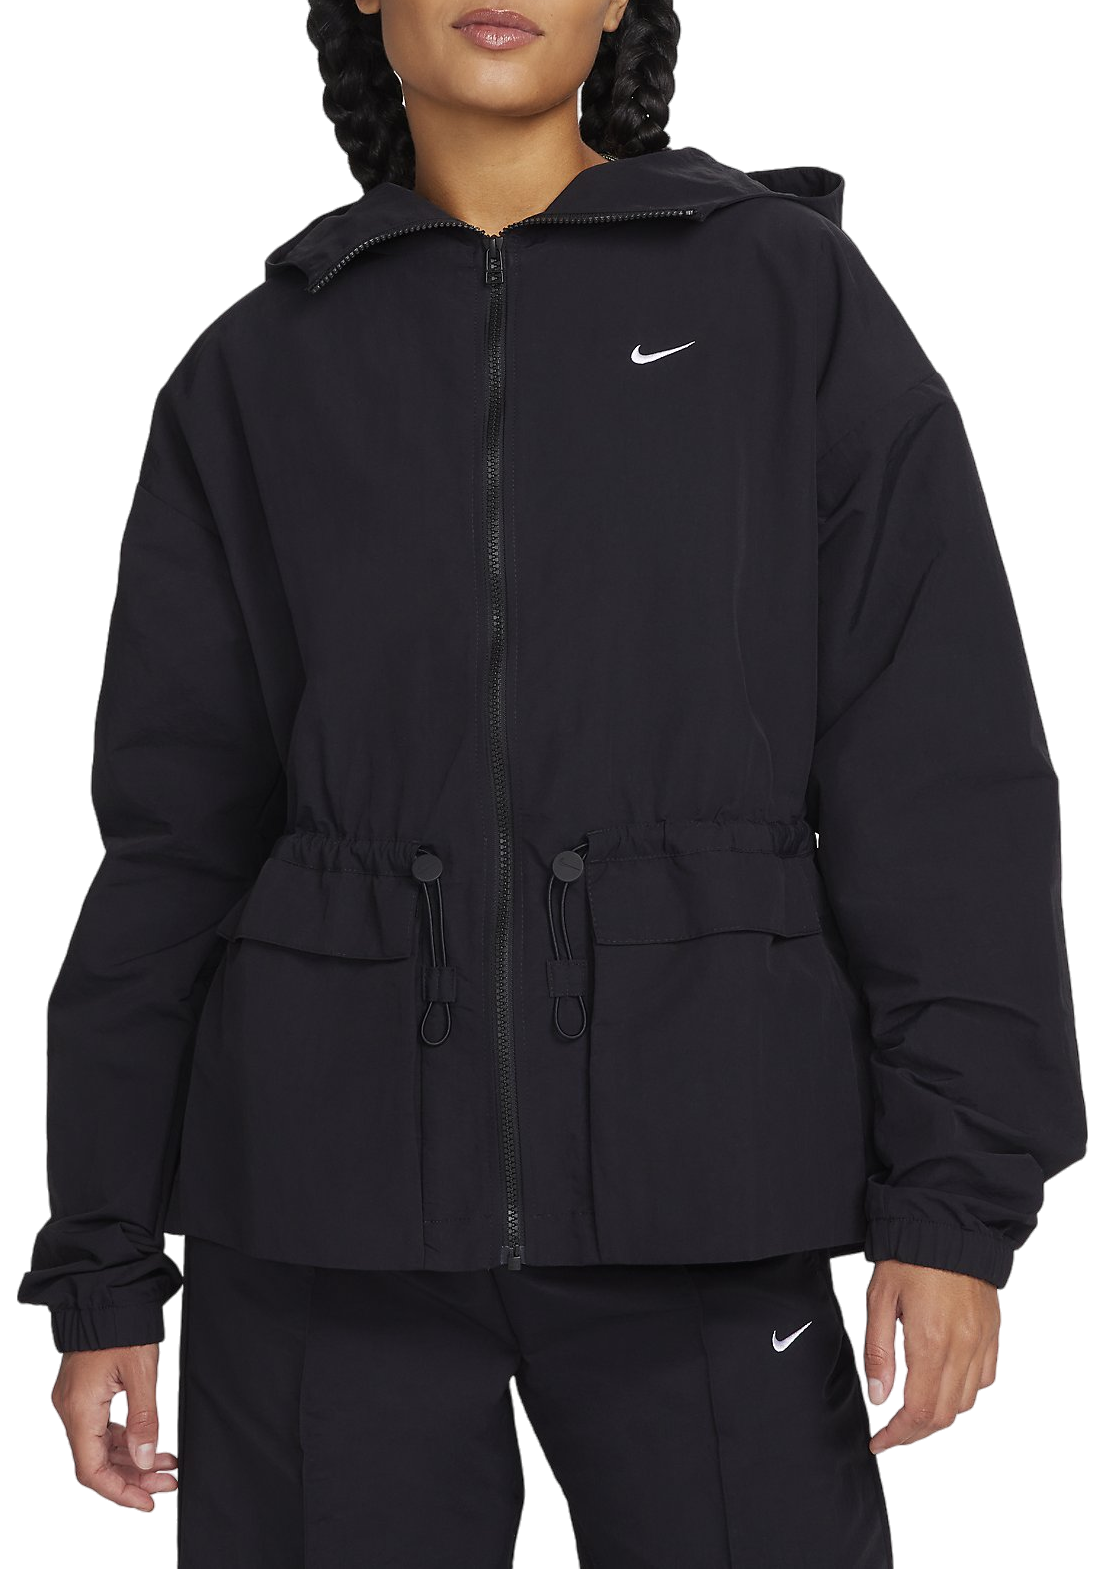 Hooded jacket Nike W NSW TREND WVN JKT